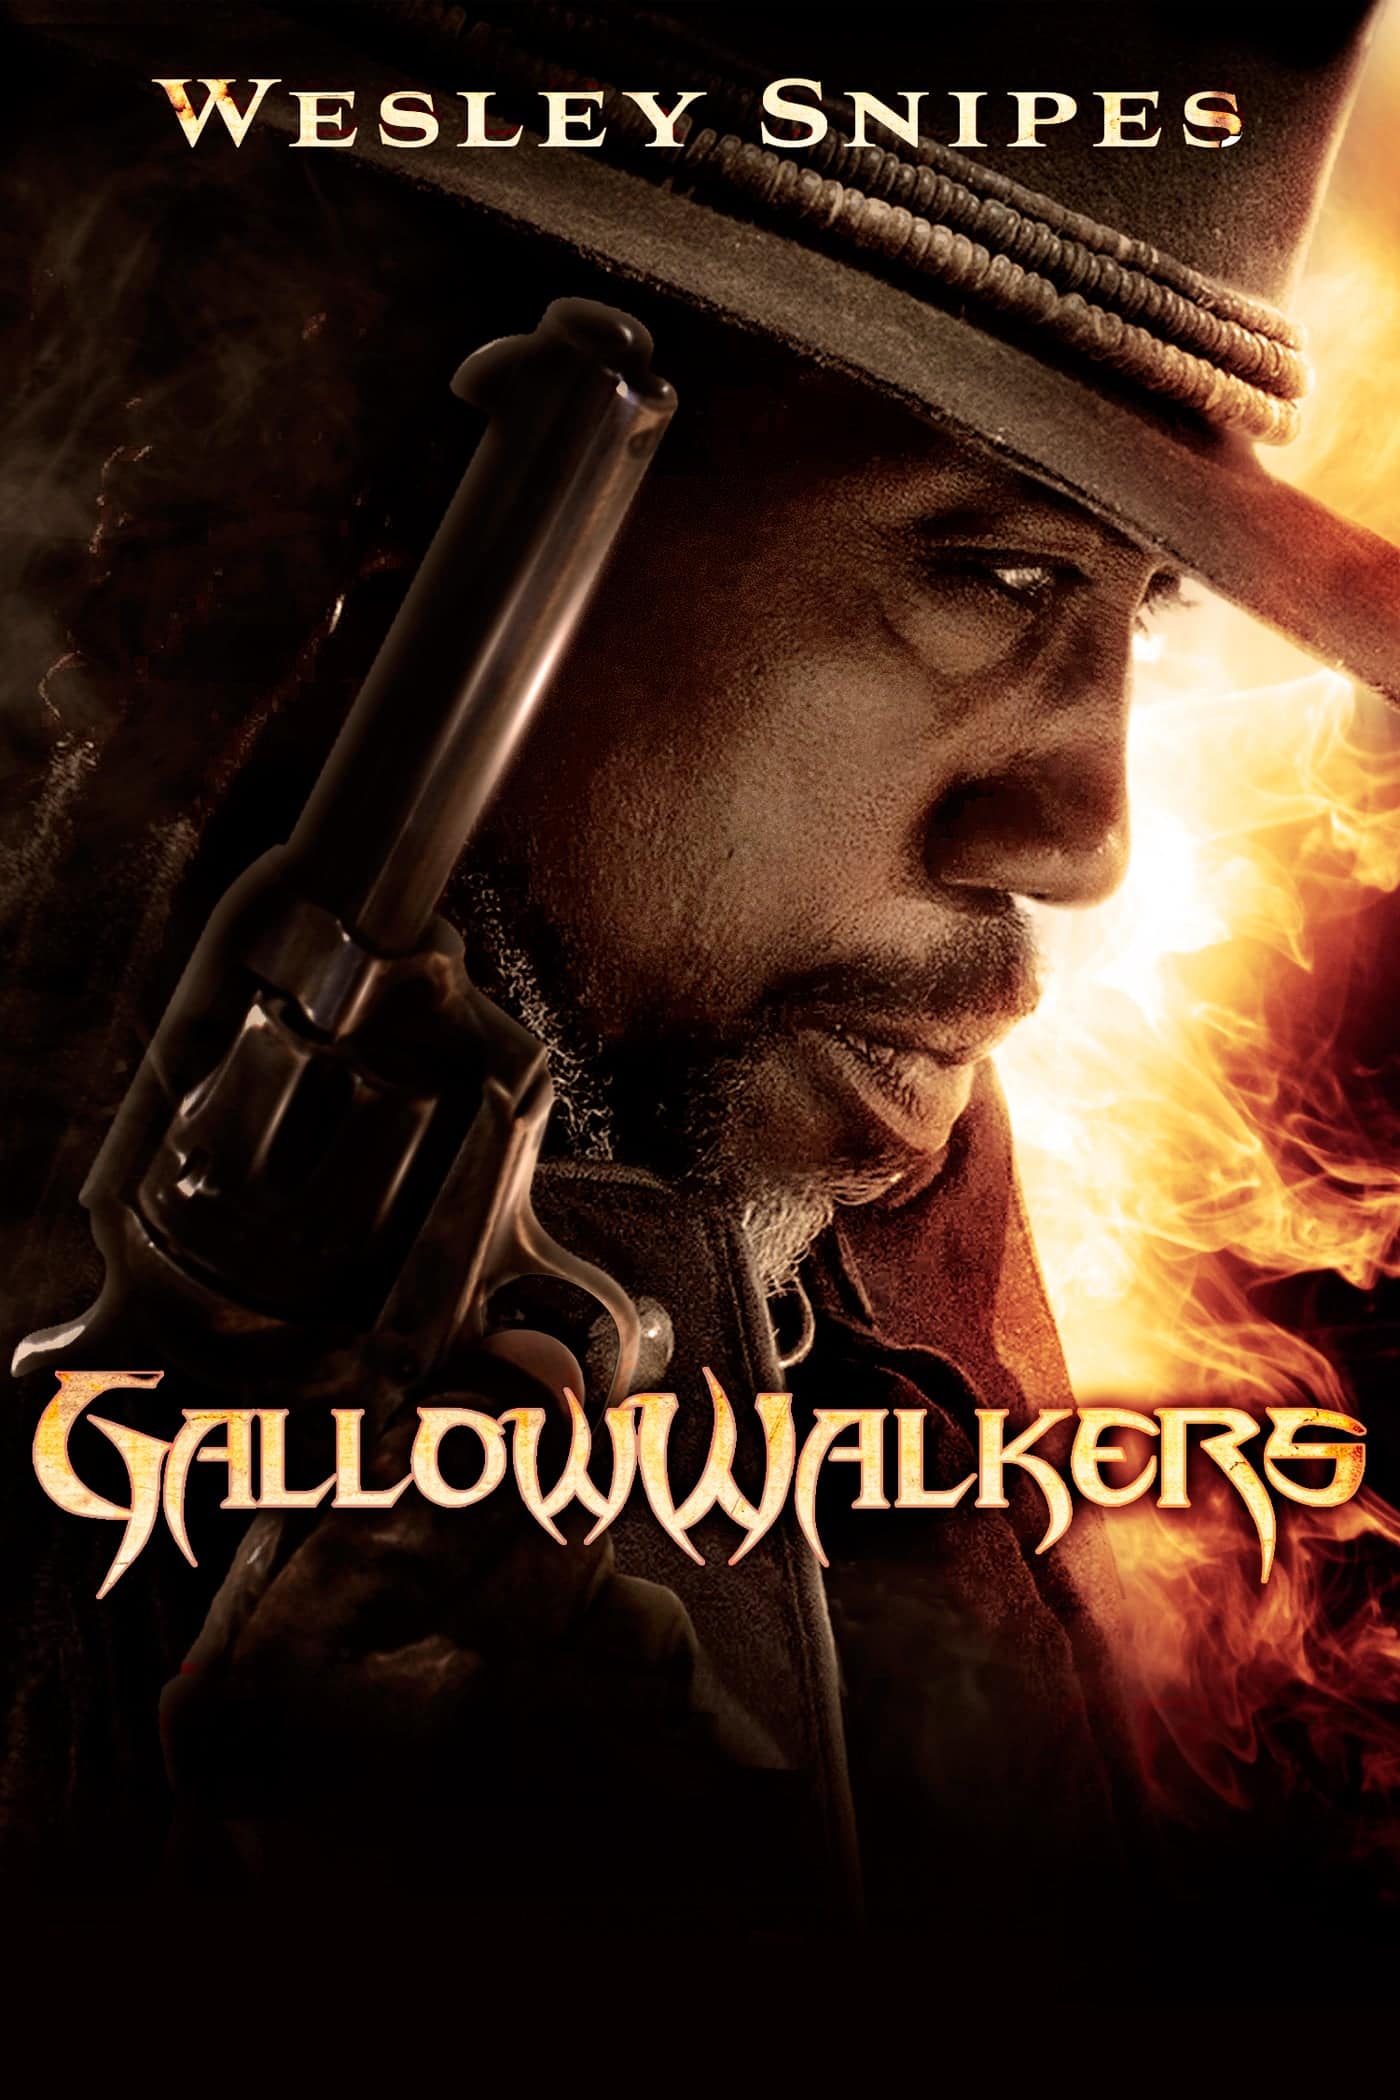 Plakat von "Gallowwalkers"